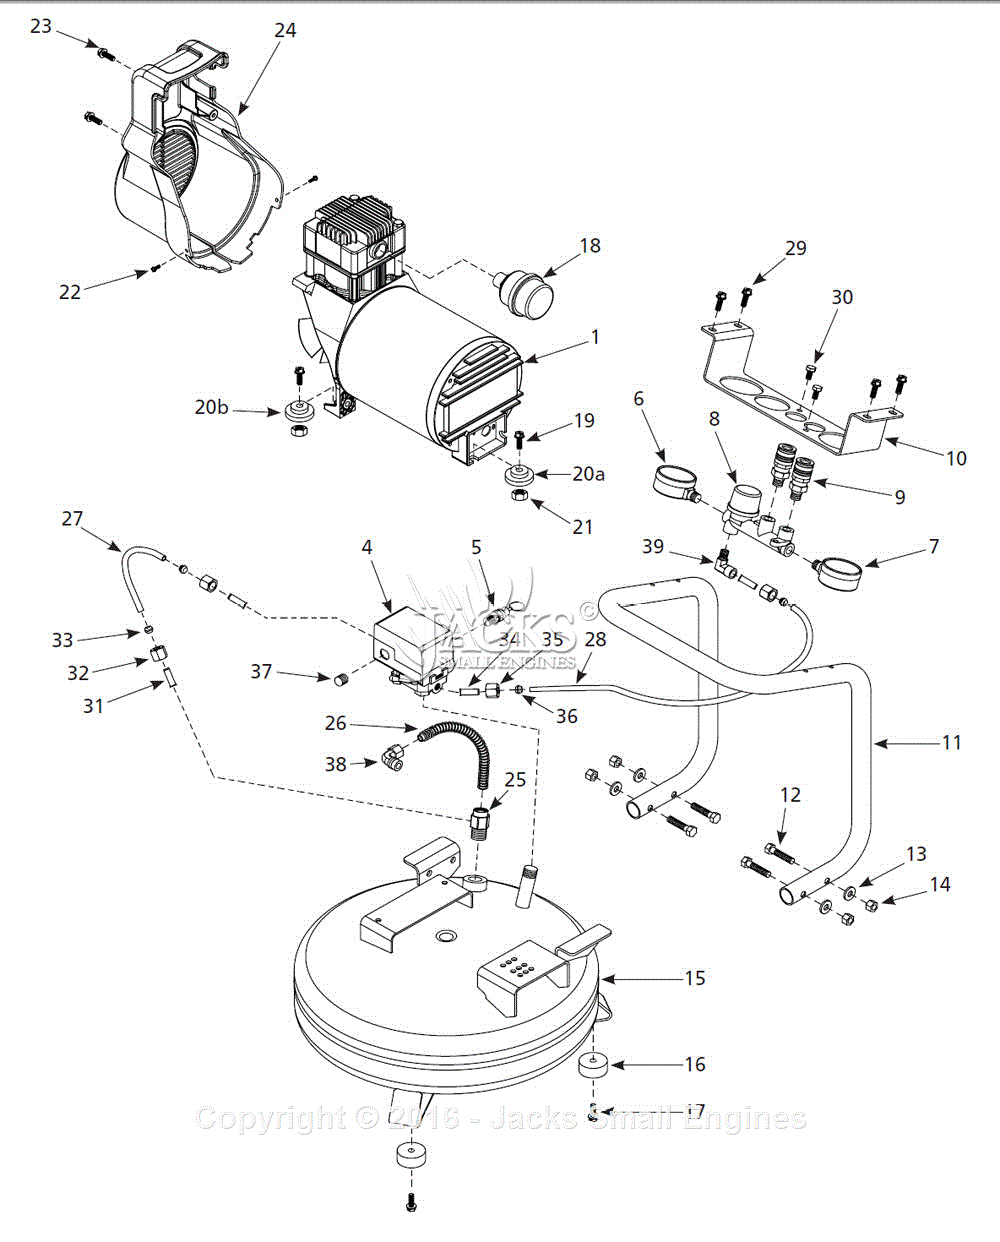 Campbell Hausfeld Air Compressor Parts Diagram Campbell Hausfeld 1nne7 Parts Diagram For Air Compressor Parts